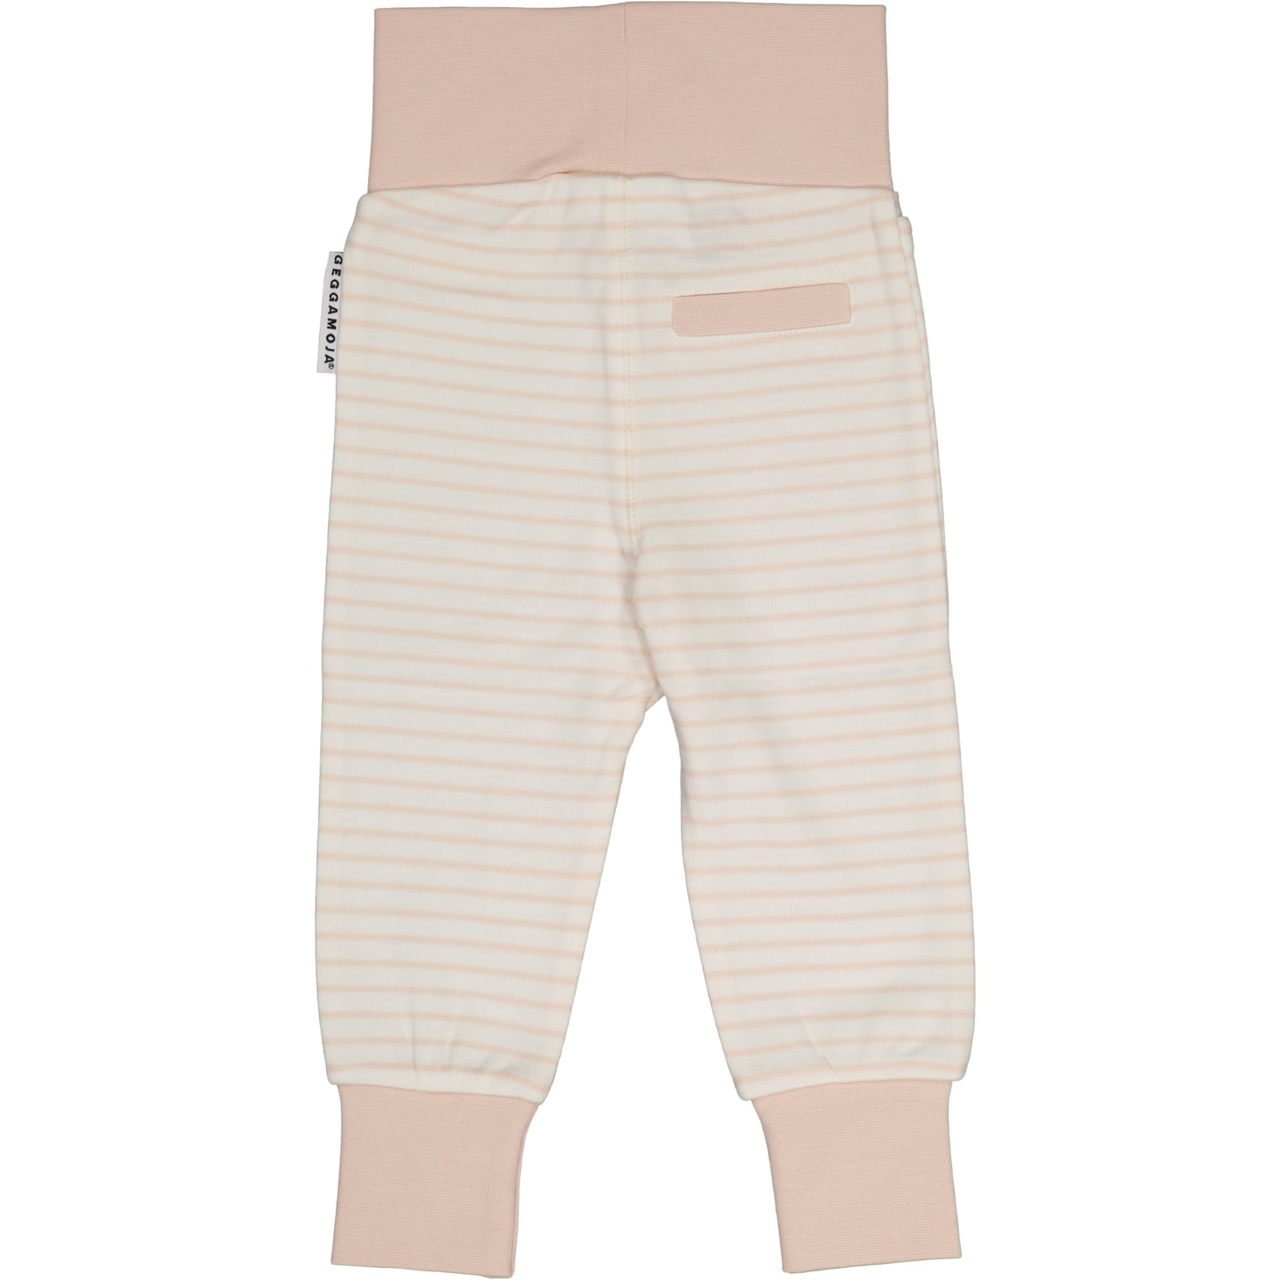 Vauvan housut L.vaaleanpunainen/offvalkoinen 50/56